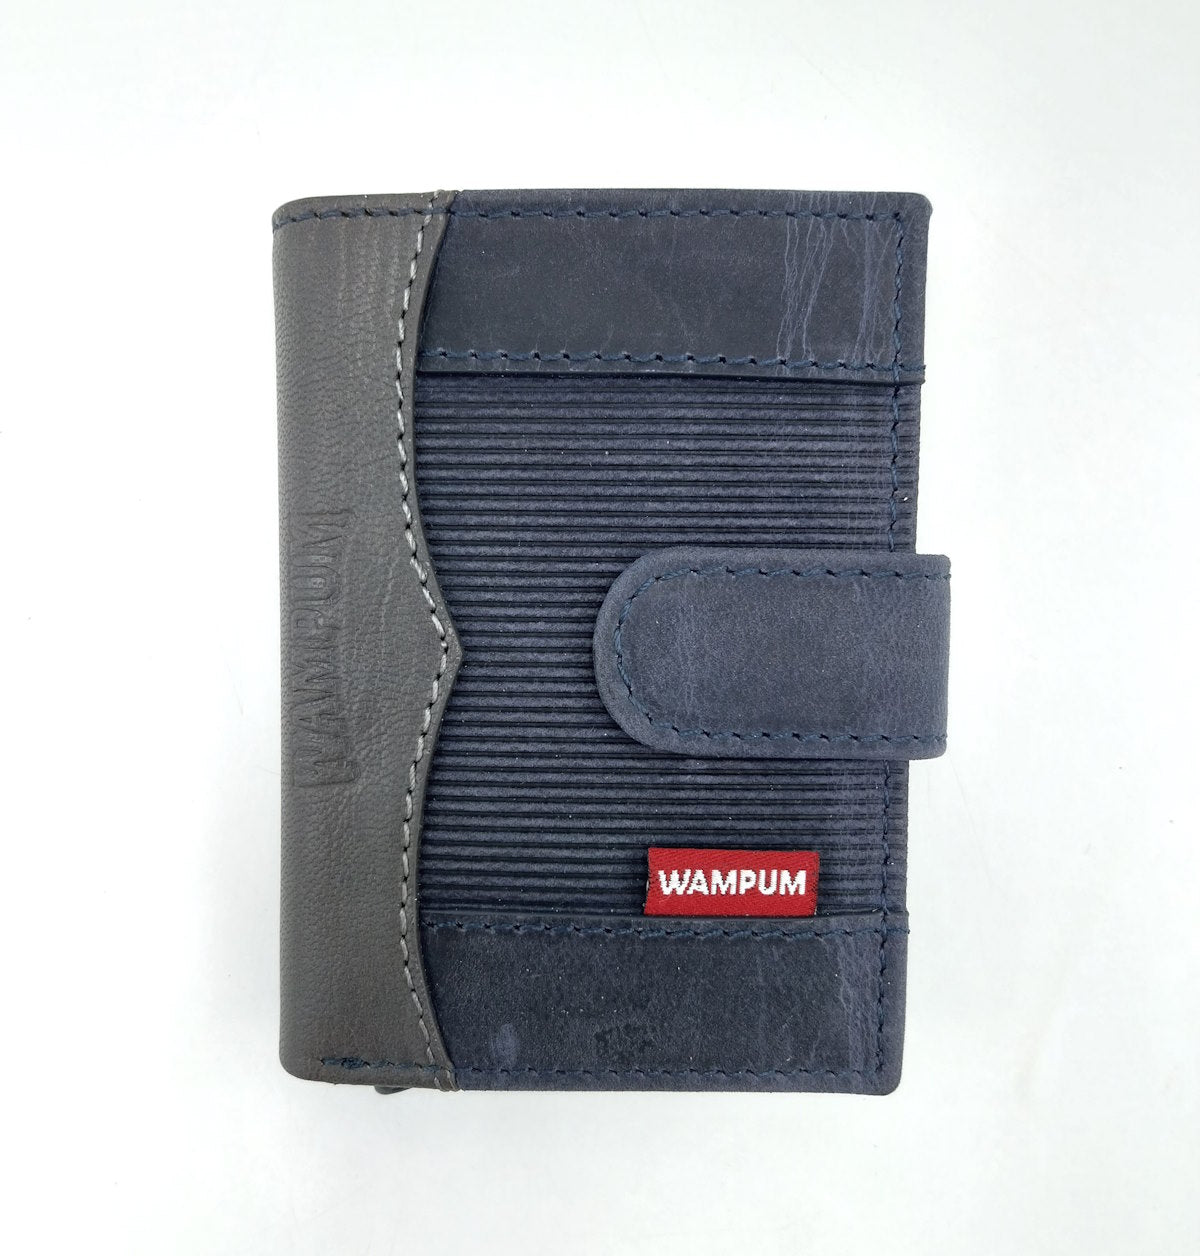 Genuine leather wallet, Wampum, art. pdk401-92